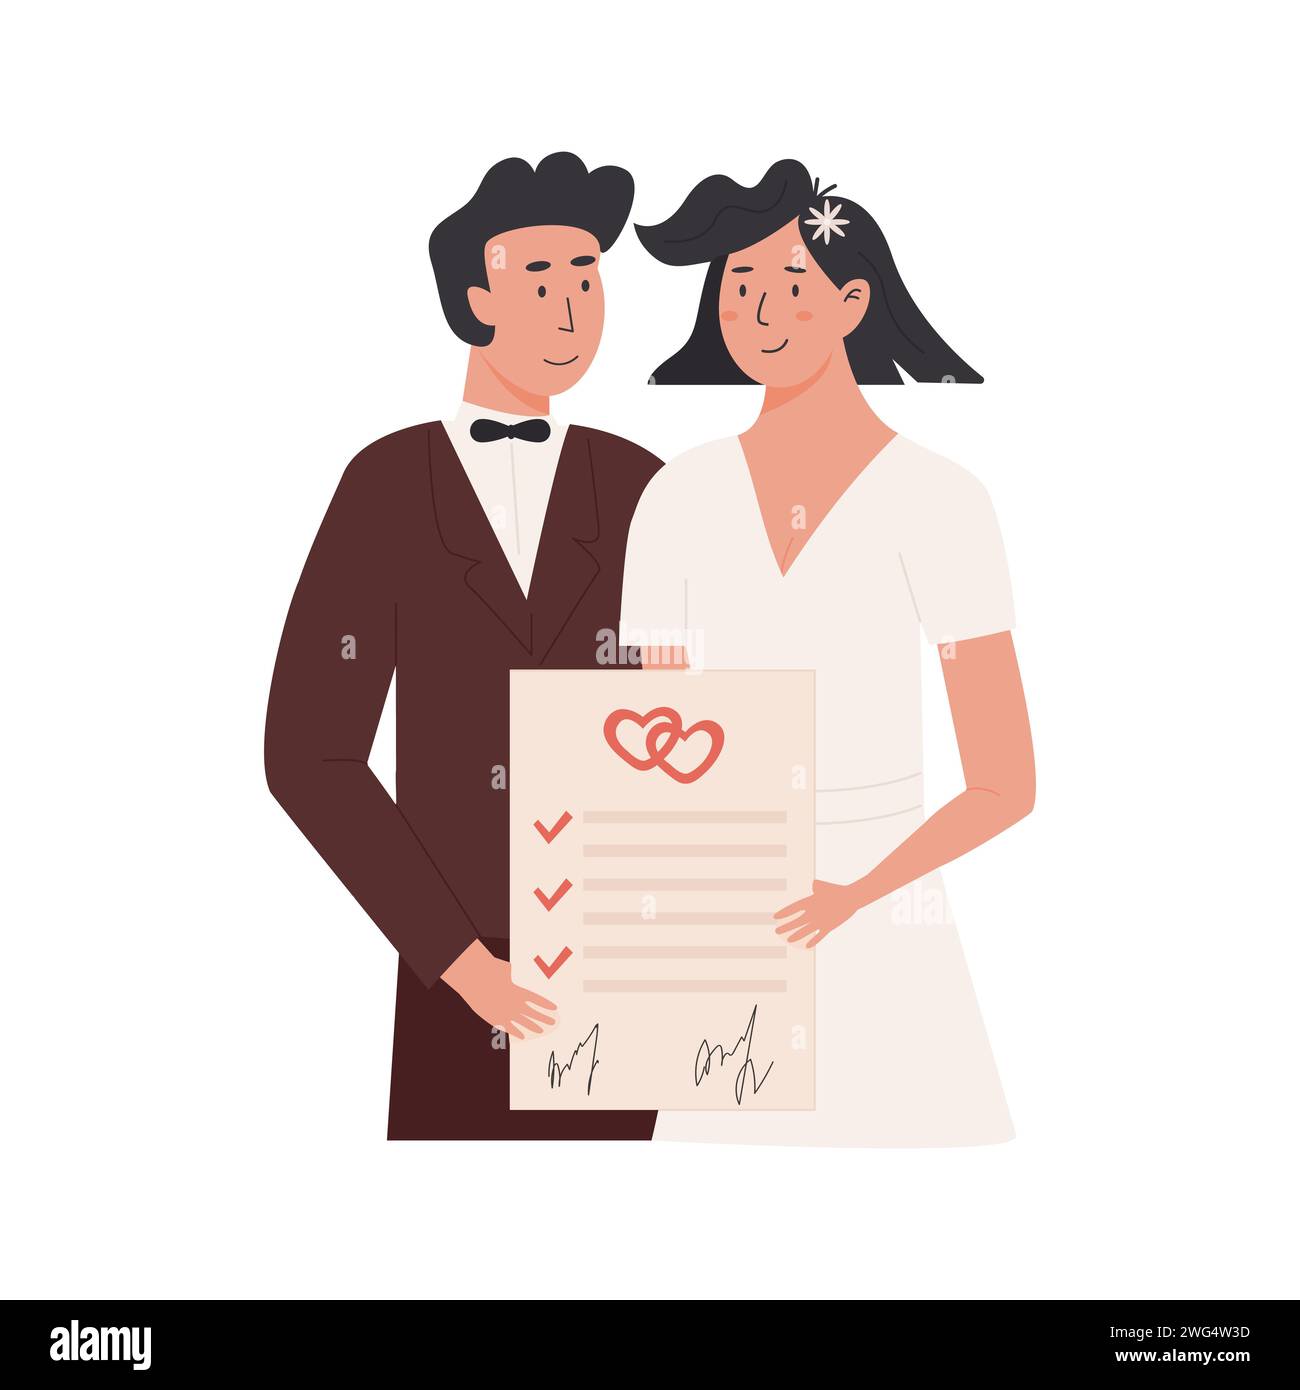 Ein Bräutigam und eine Braut haben einen Ehevertrag unterzeichnet. Glückliches verheiratetes Paar mit Ehevertrag. Frisch vermählt mit Ehevertrag und Heiratsurkunde Stock Vektor